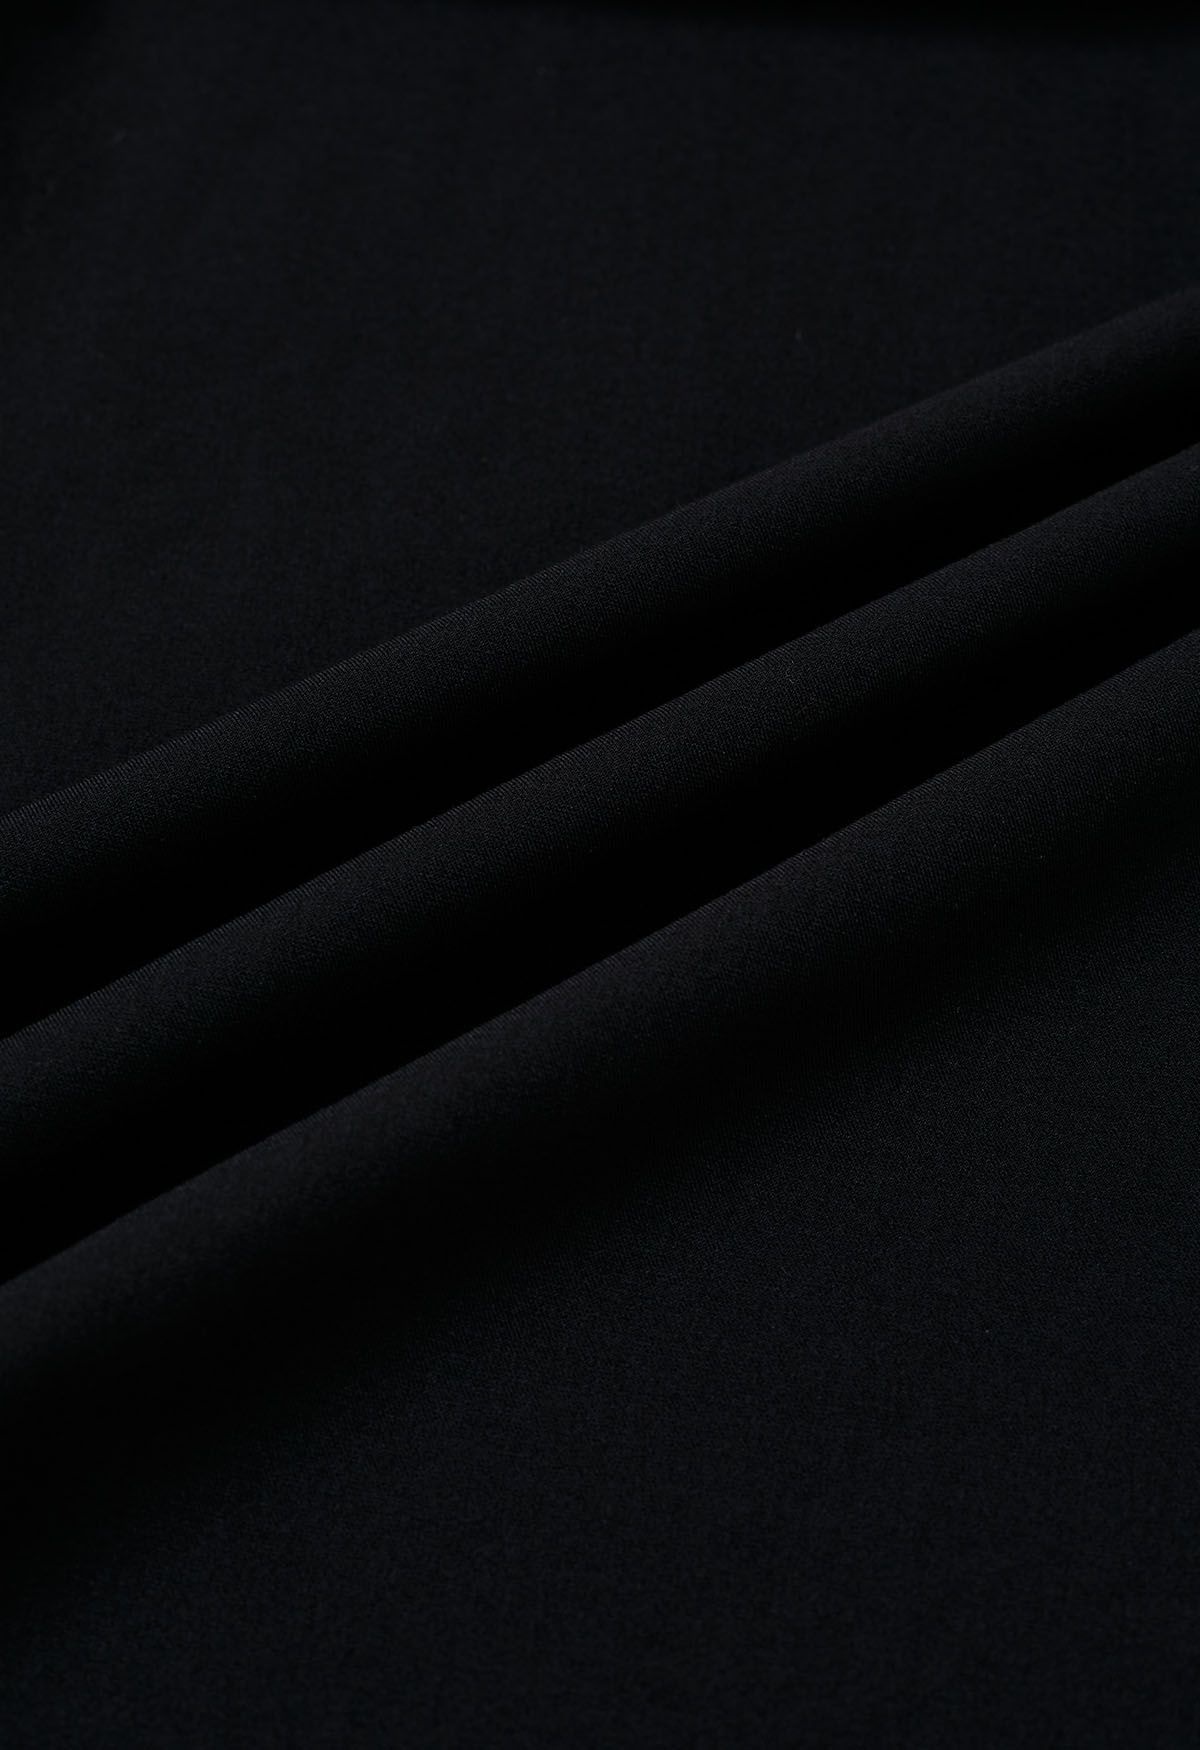 Falda acampanada plisada decorada con botones en negro